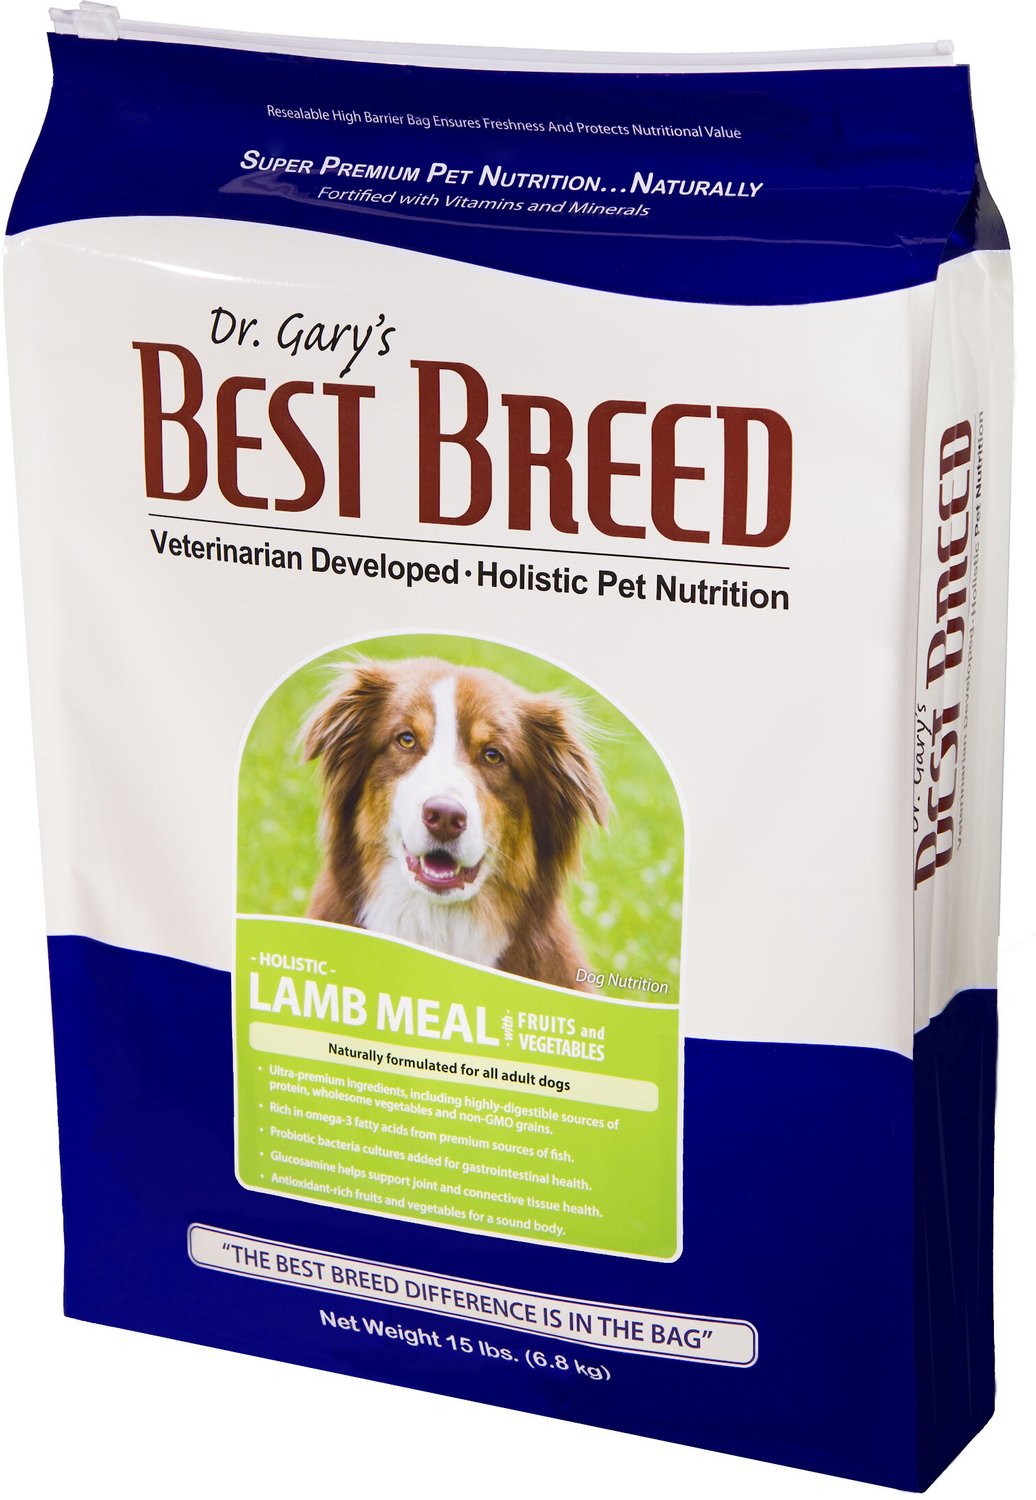 holistic lamb dog food